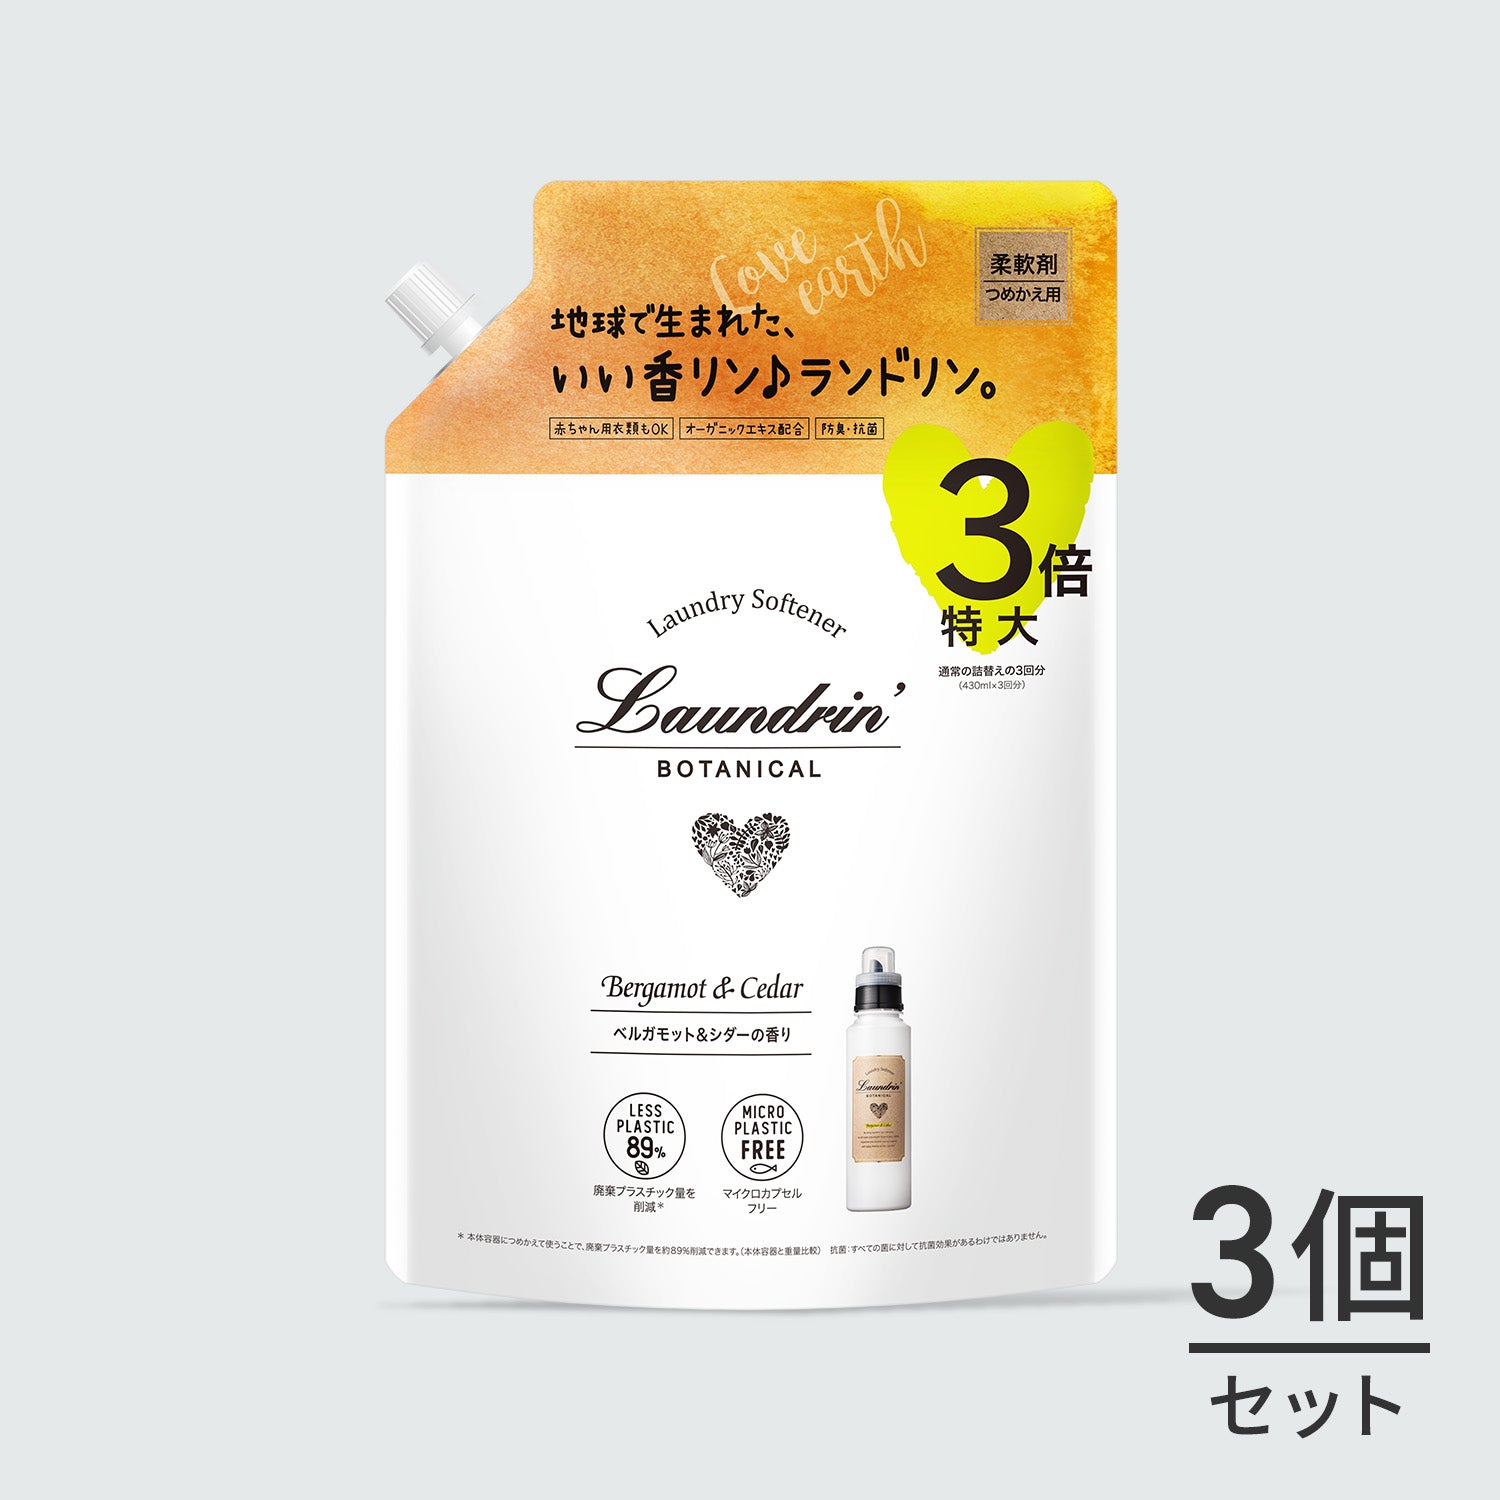 →→新品▽ランドリン 柔軟剤 ベルガモット&シダーの香り 詰め替え 3つ